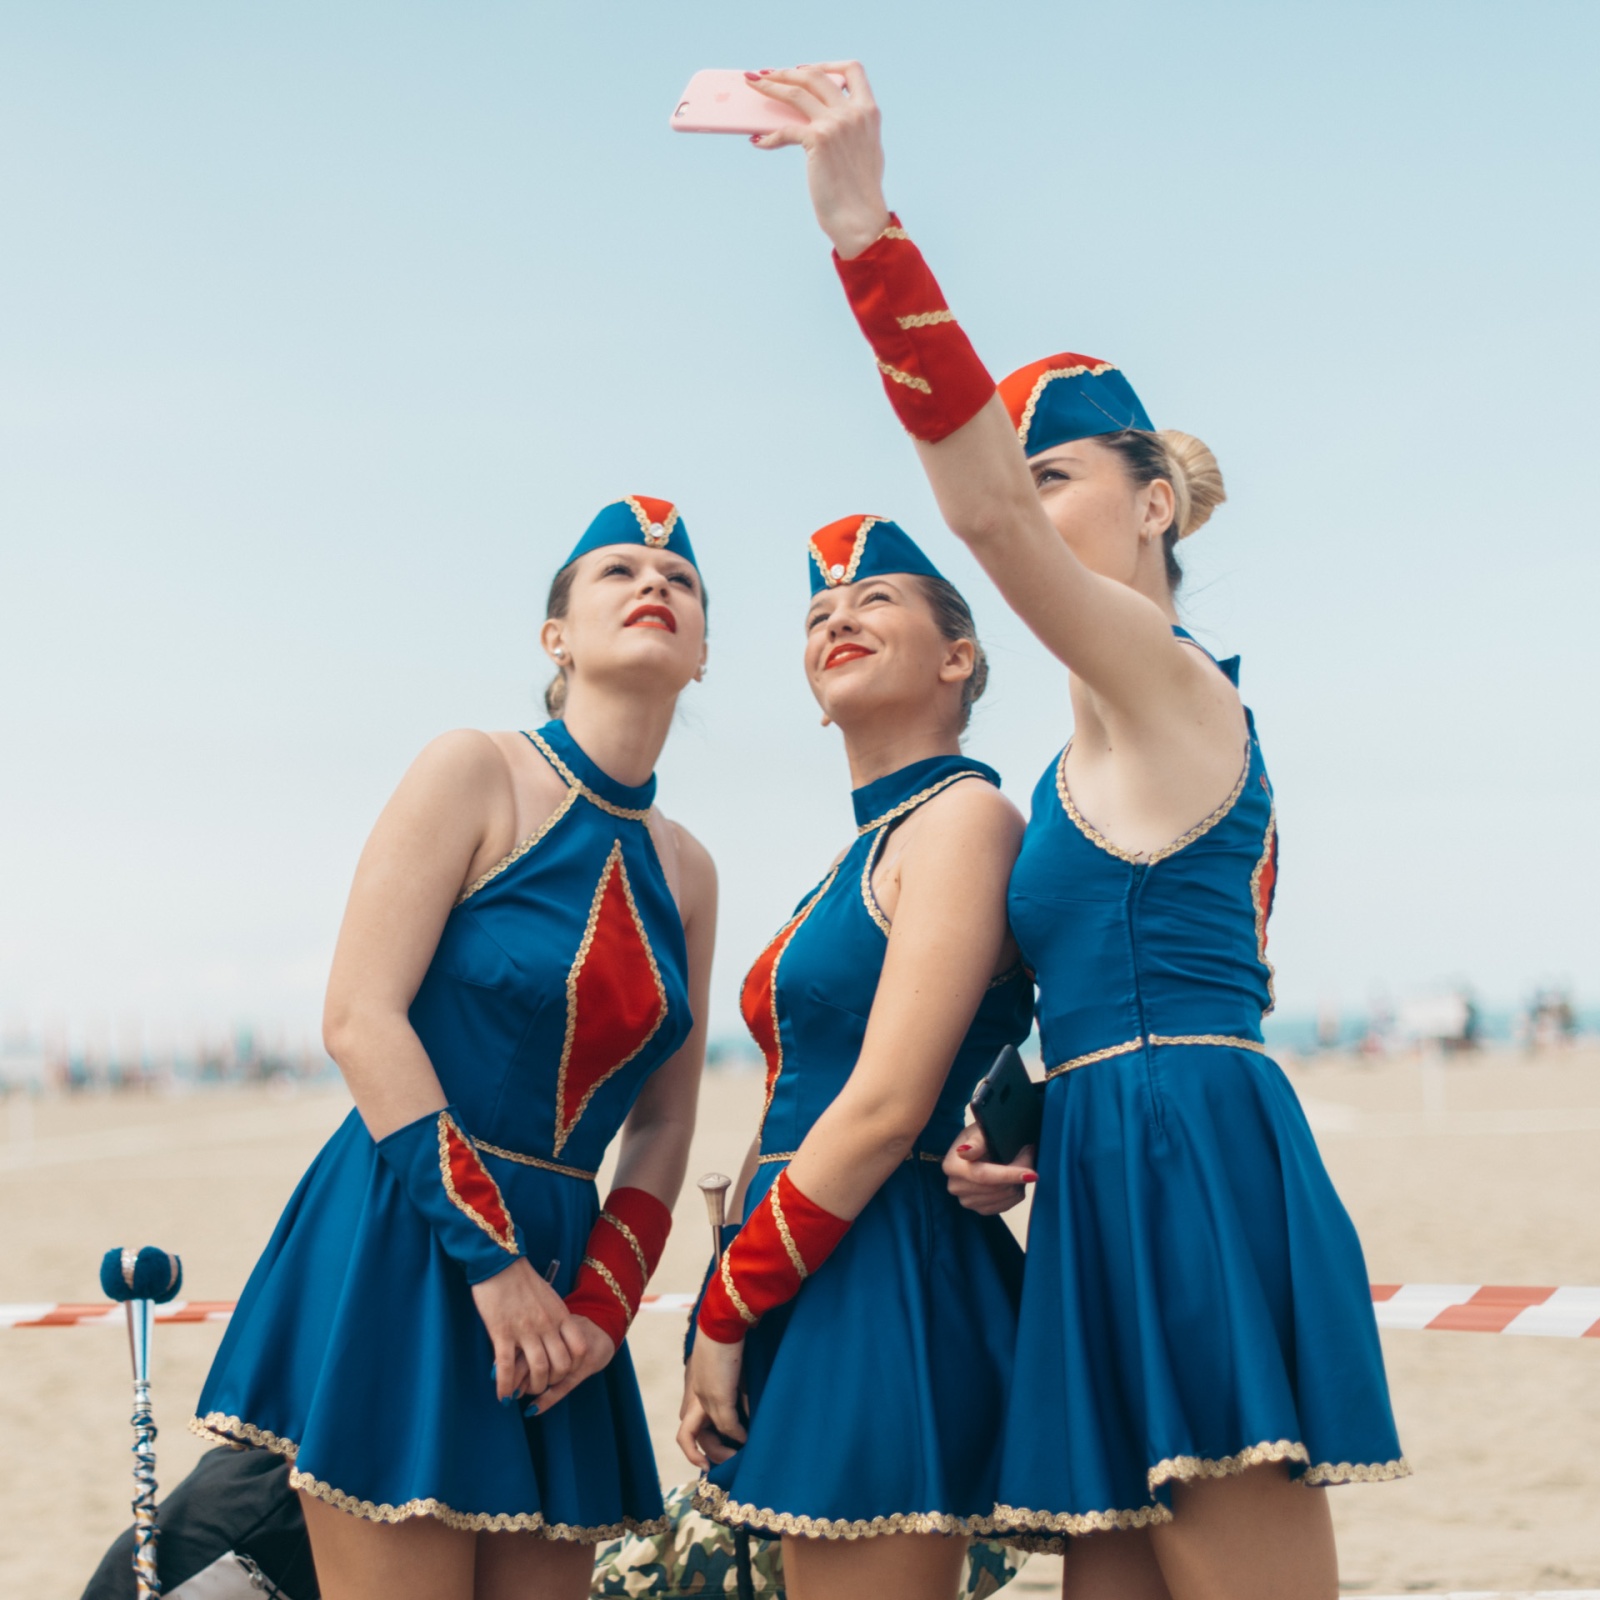 Giorgia, Sara, e Maida delle Majorettes di Mentana scattano un selfie in uniforme prima dei Campionati Italiani Majorette Dance ANBIMA - MWF 2017. Viareggio, LU, 2017. © Agnese Morganti.